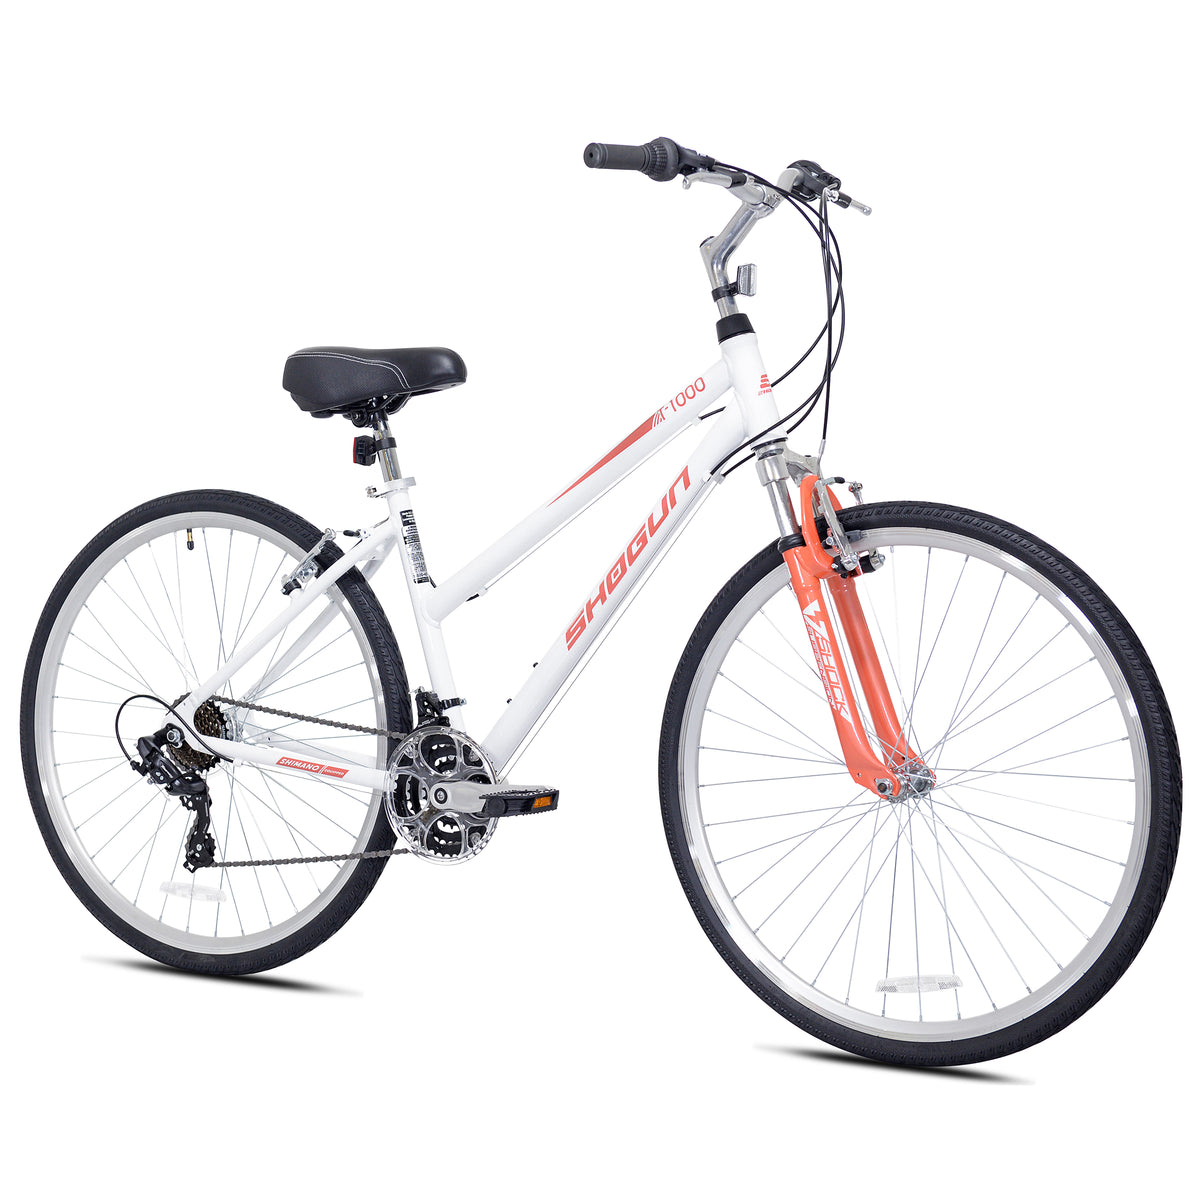 700c Shogun T1000 | Hybrid Comfort Bike for Women Ages 14+